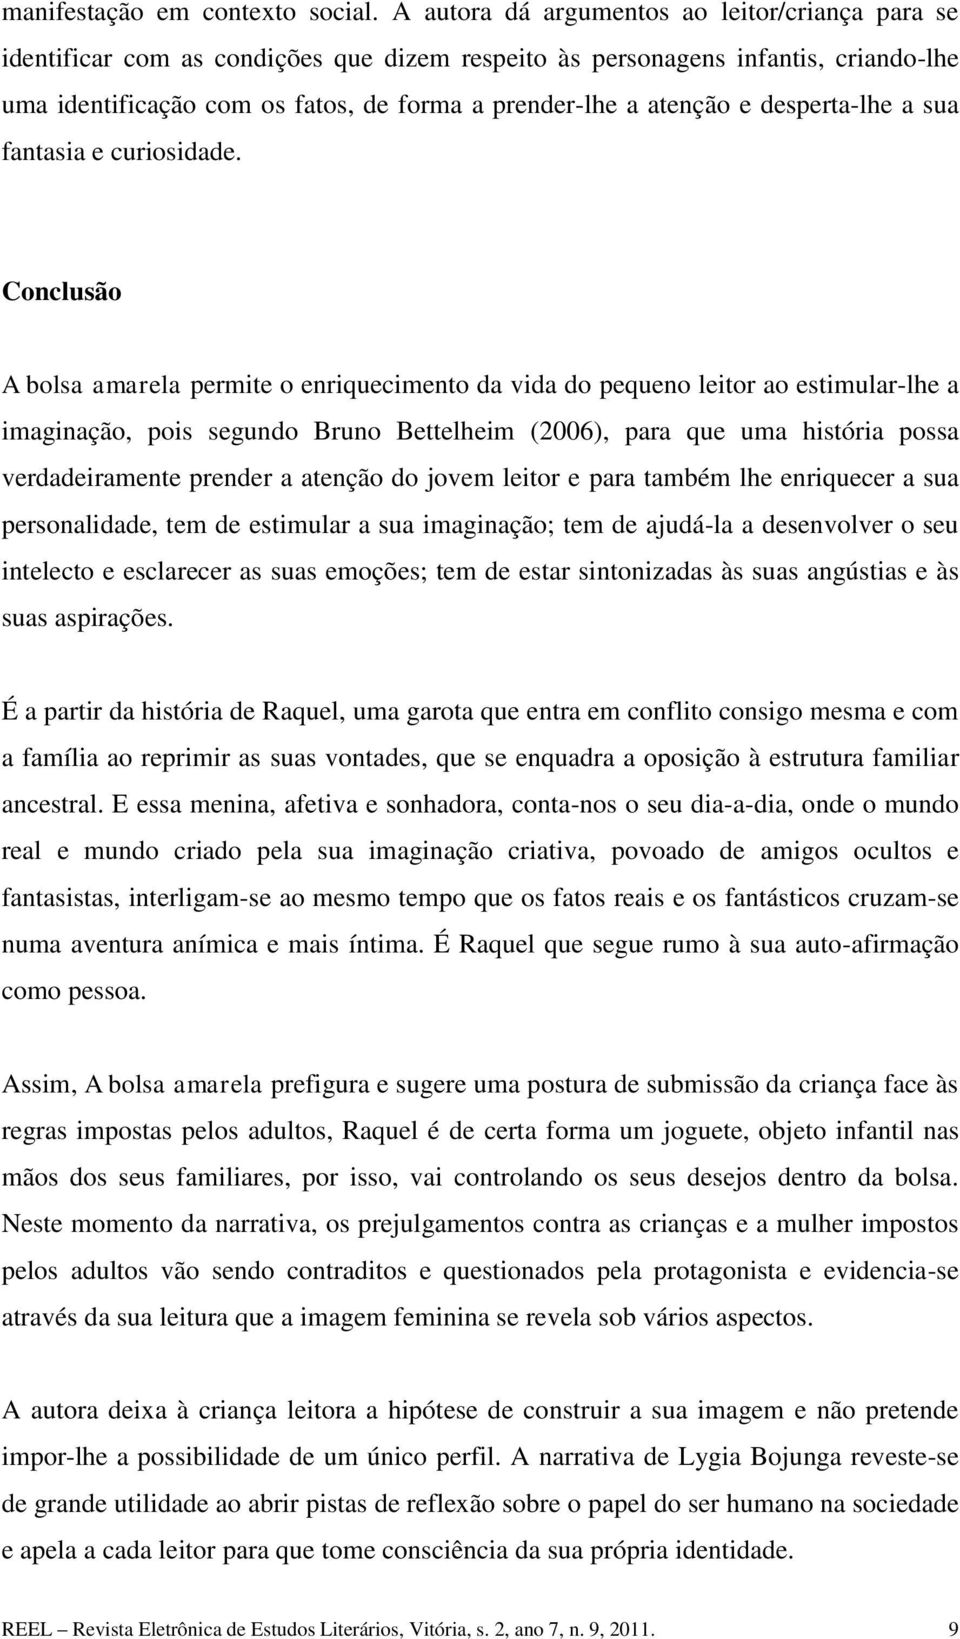 O DISCURSO FEMININO EM A BOLSA AMARELA: A BUSCA PELA LIBERTAÇÃO DA MULHER -  PDF Free Download